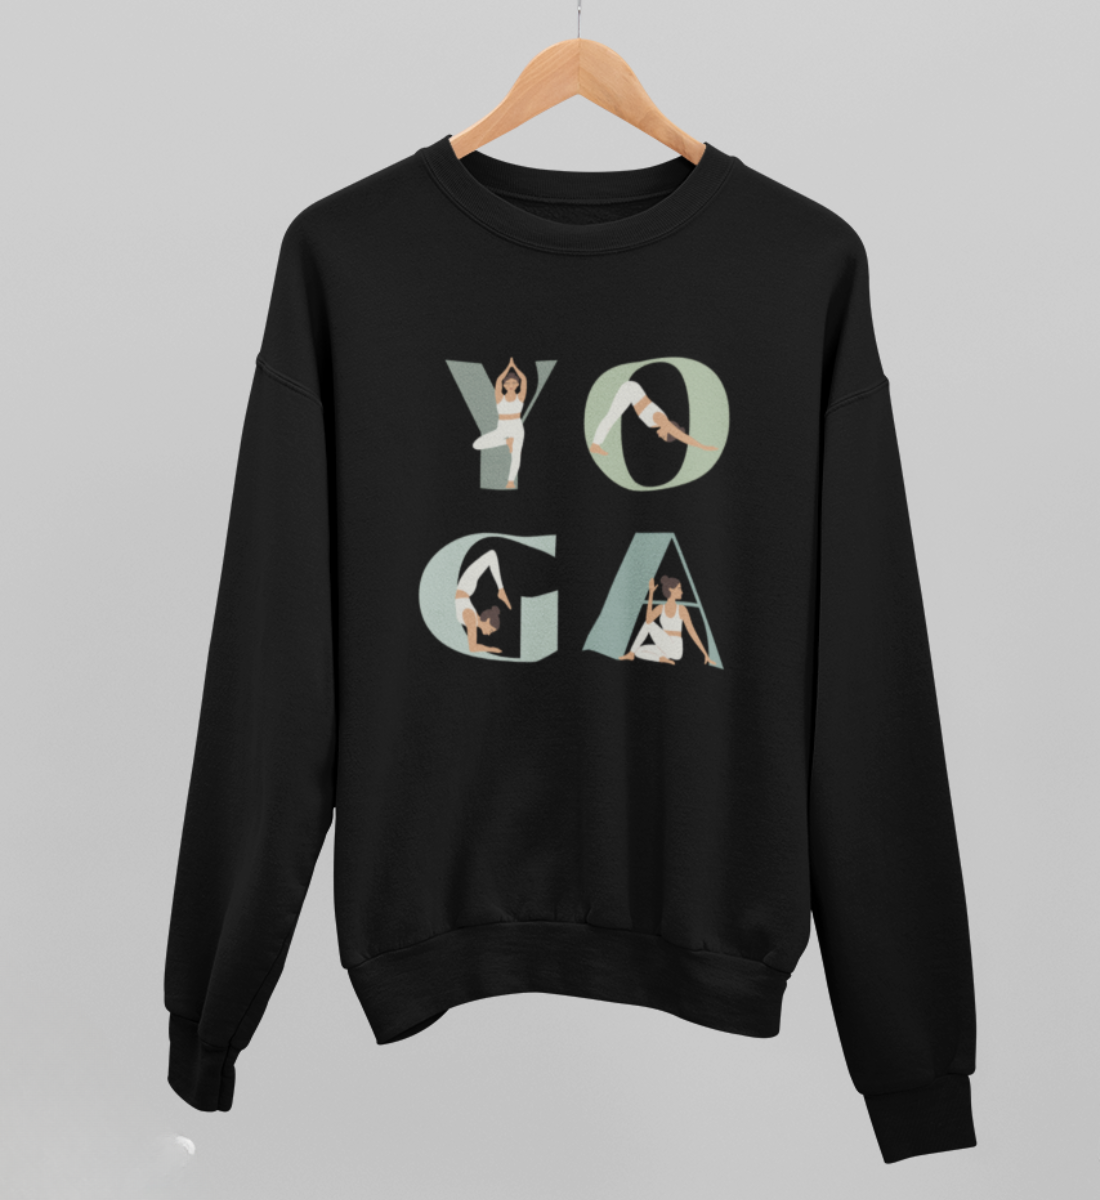 yoga girl l yoga sweatshirt schwarz l pullover bio-baumwolle l schöne yoga kleidung l nachhaltig und fair l yoga mode online shoppen